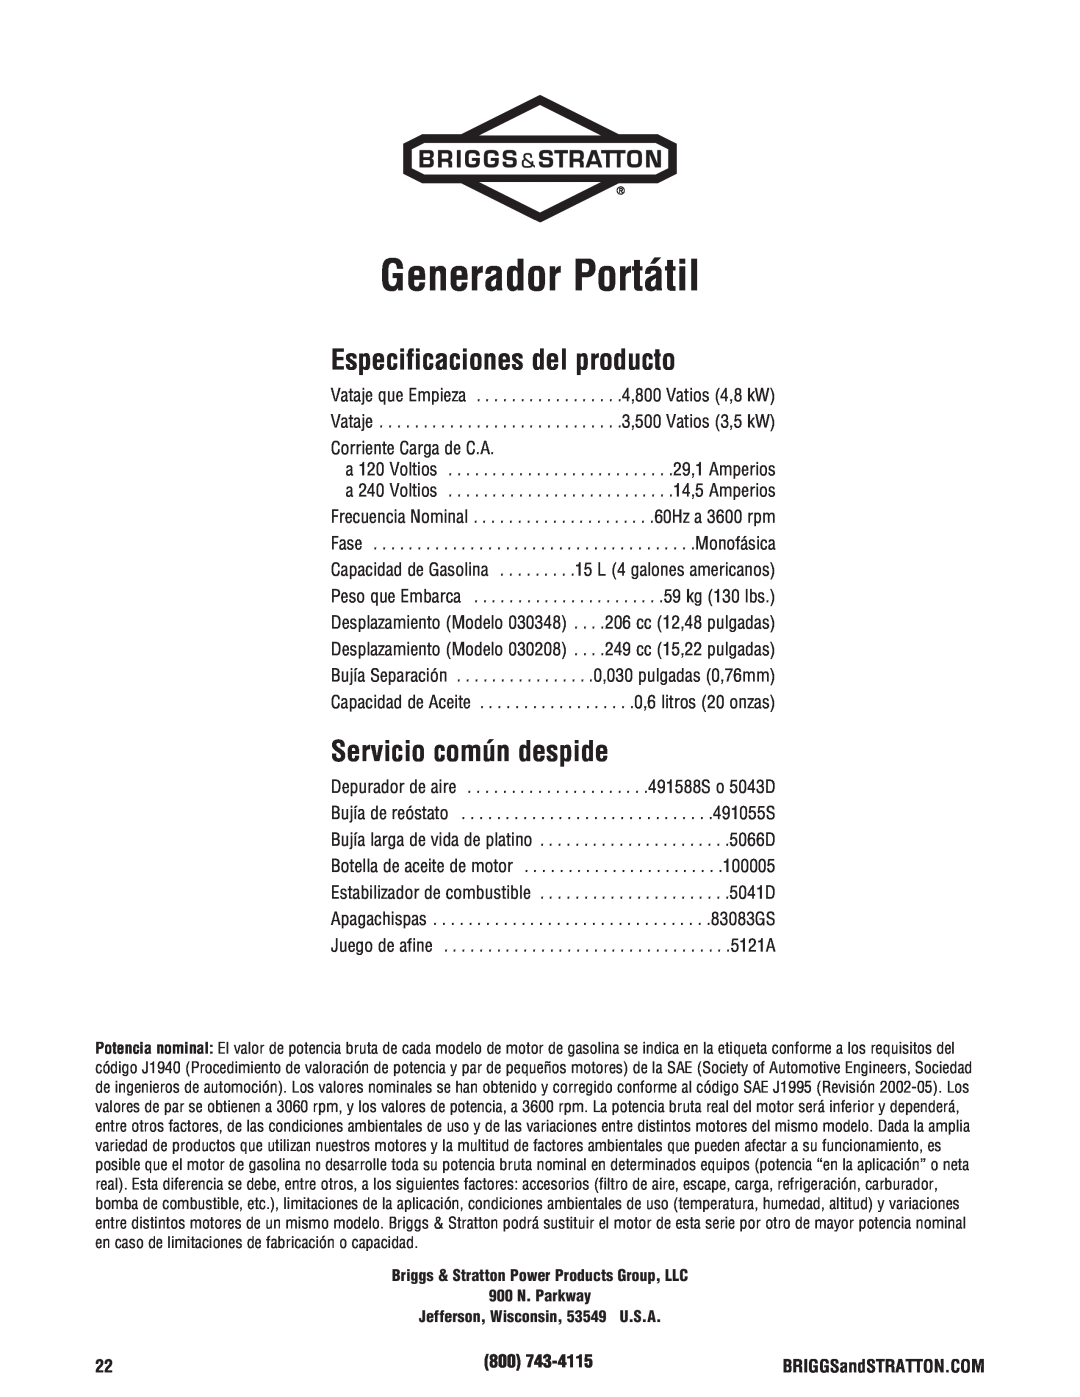 Briggs & Stratton 30348 manual Generador Portátil, Especificaciones del producto, Servicio común despide 